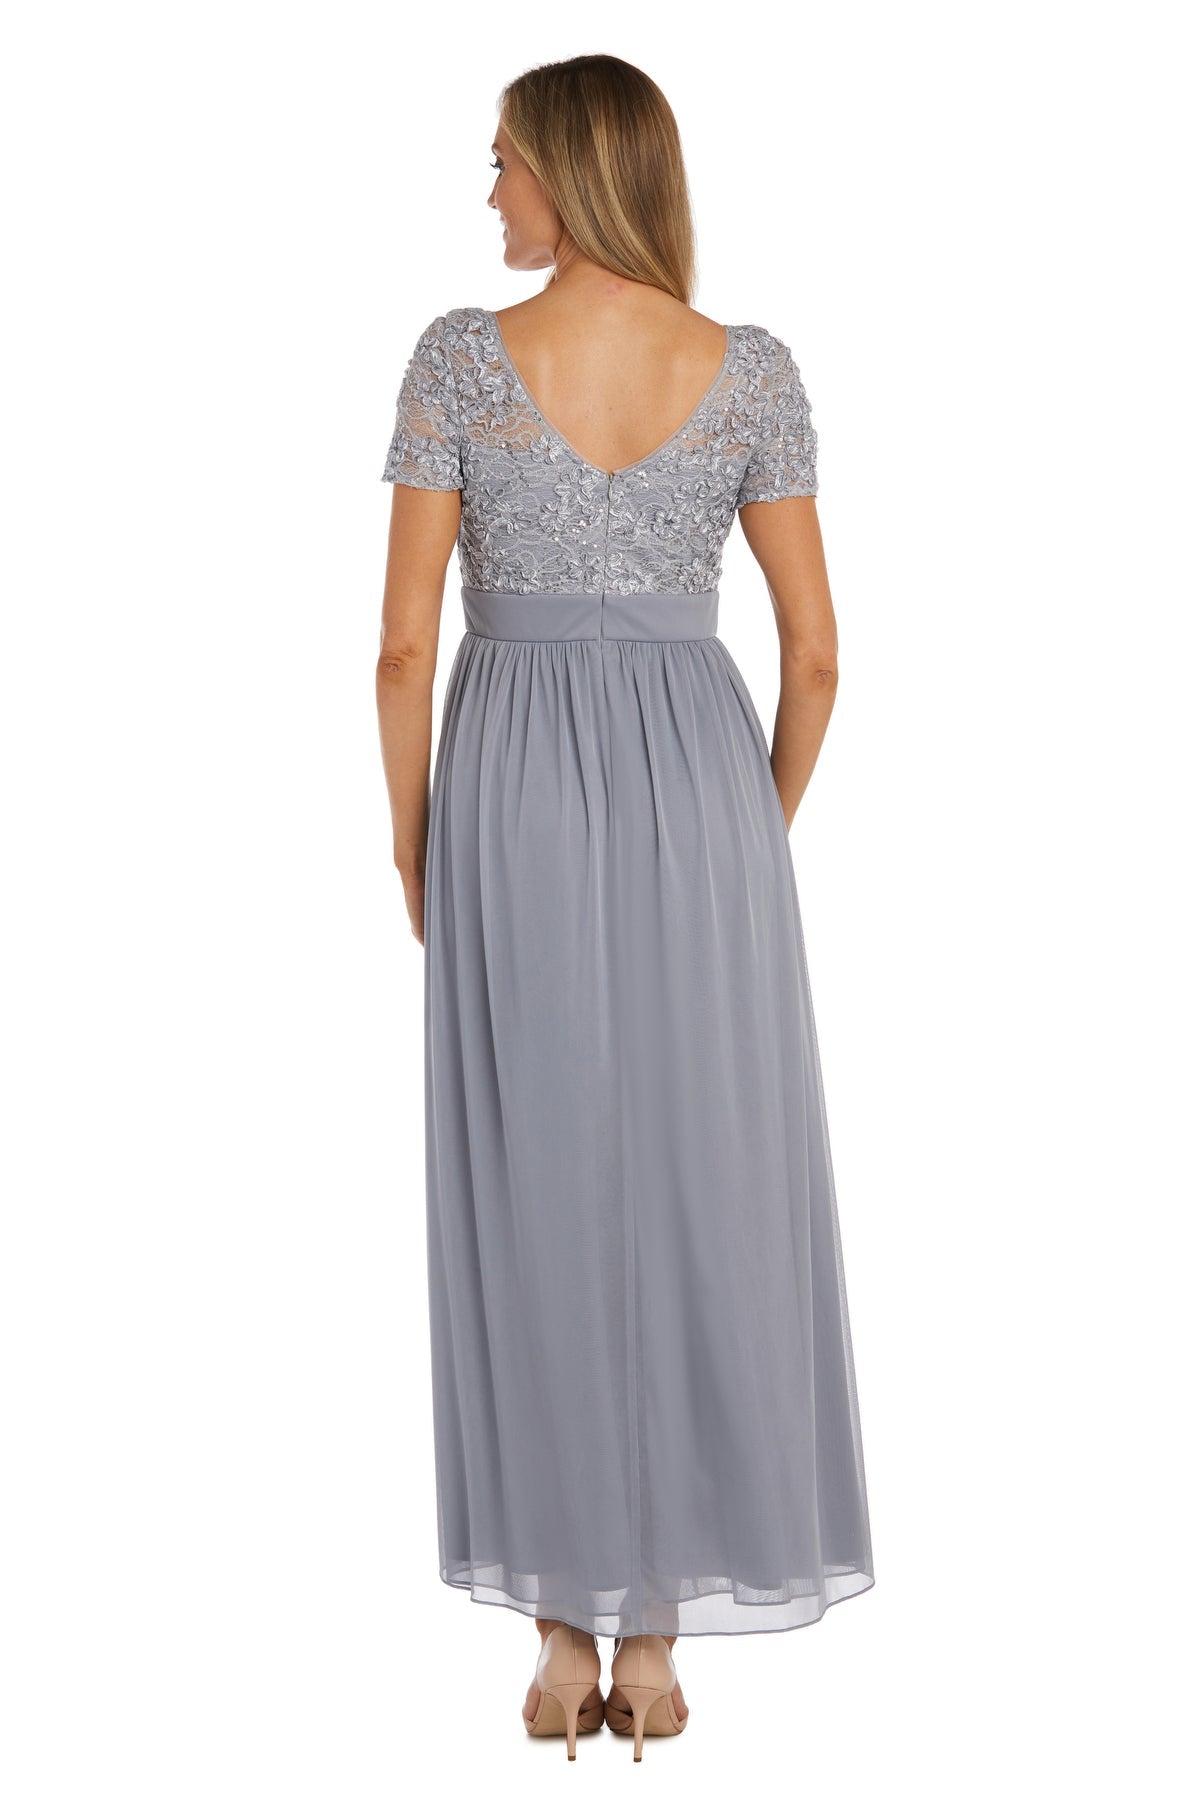 Soutache Cascade Women's Evening Gown – SleekTrends